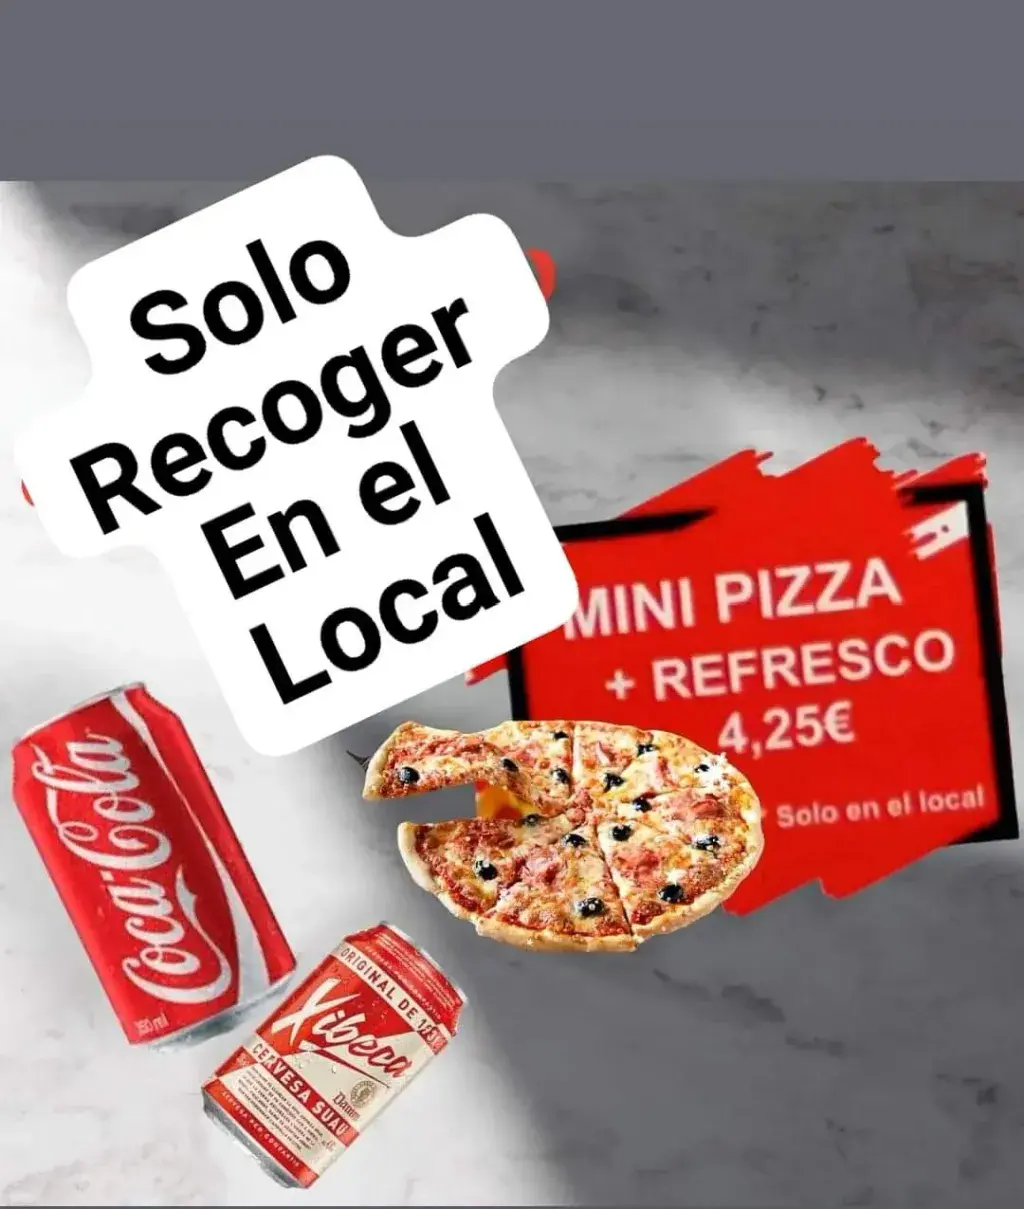 Mini pizza + refresco